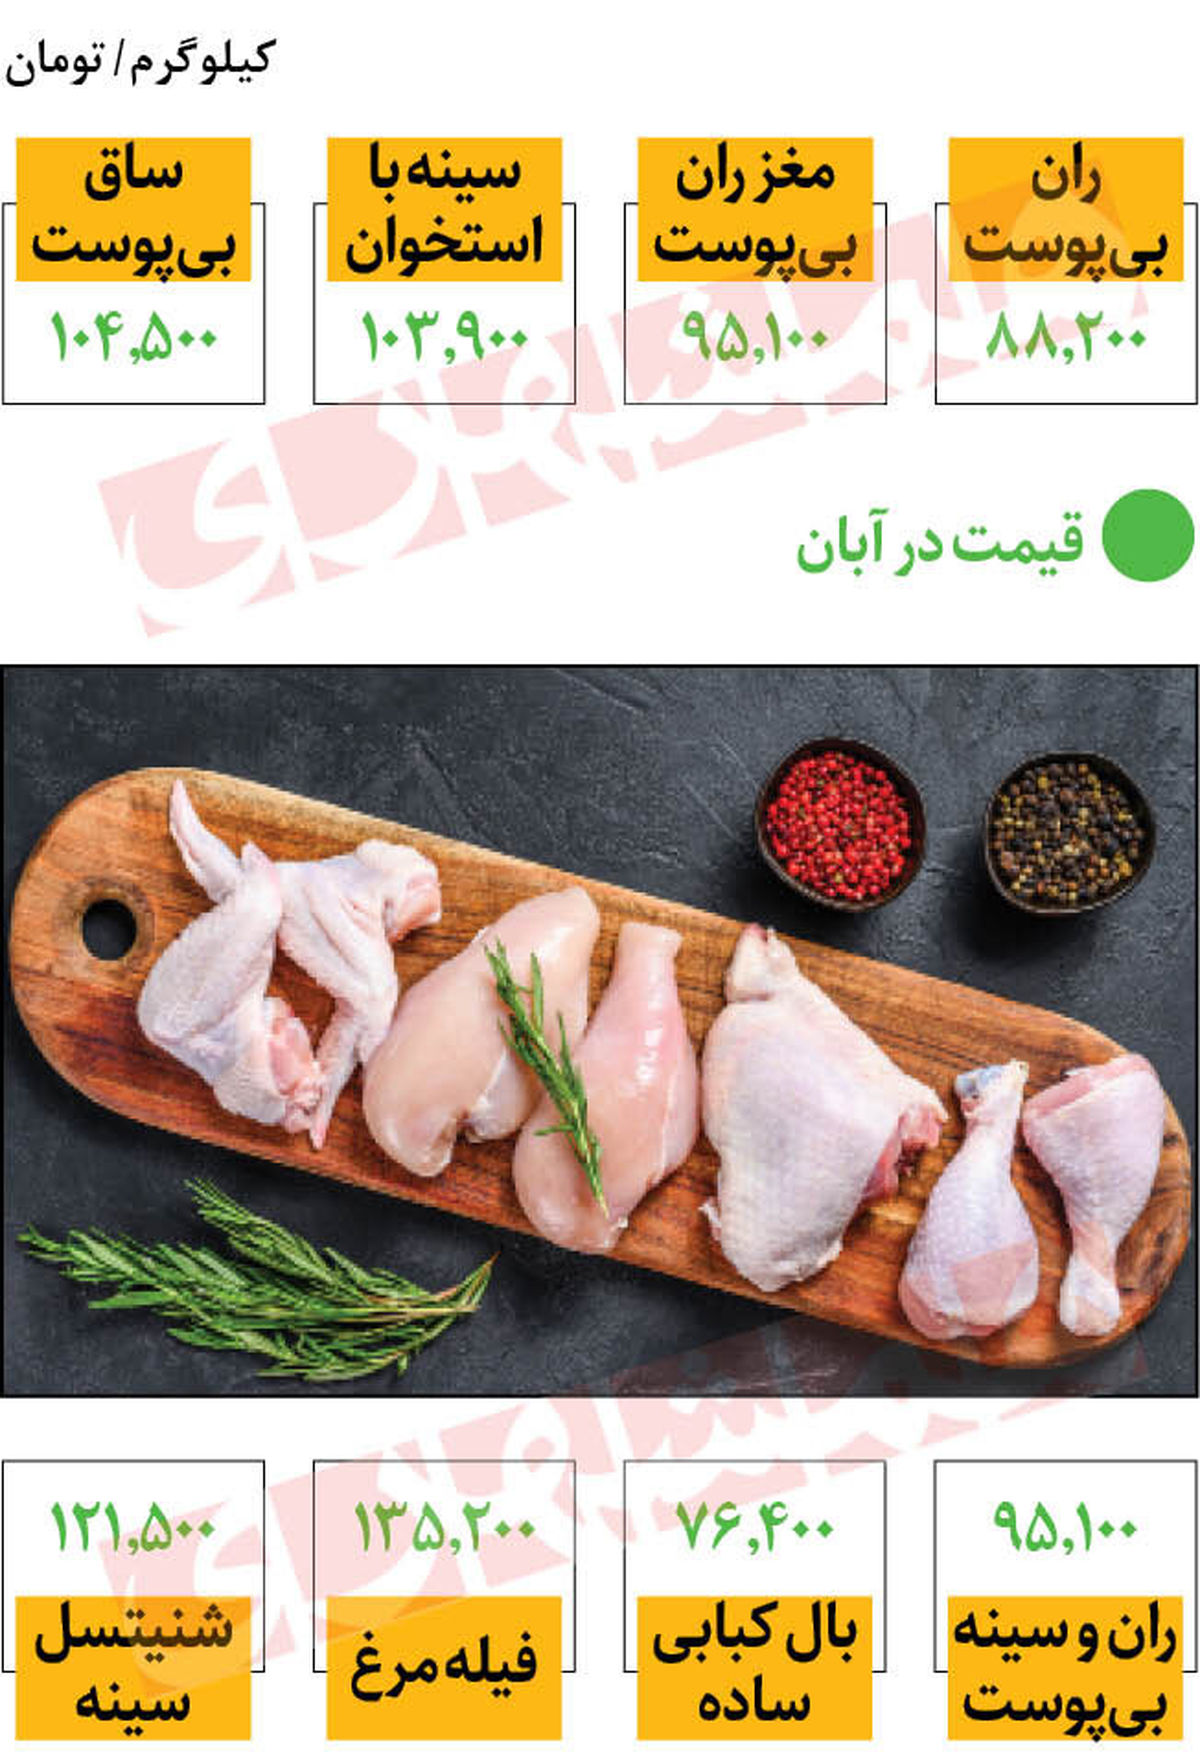 افزایش باورنکردنی قیمت مرغ در بازار امروز | قیمت مرغ کیلویی 100 تومان شد؟